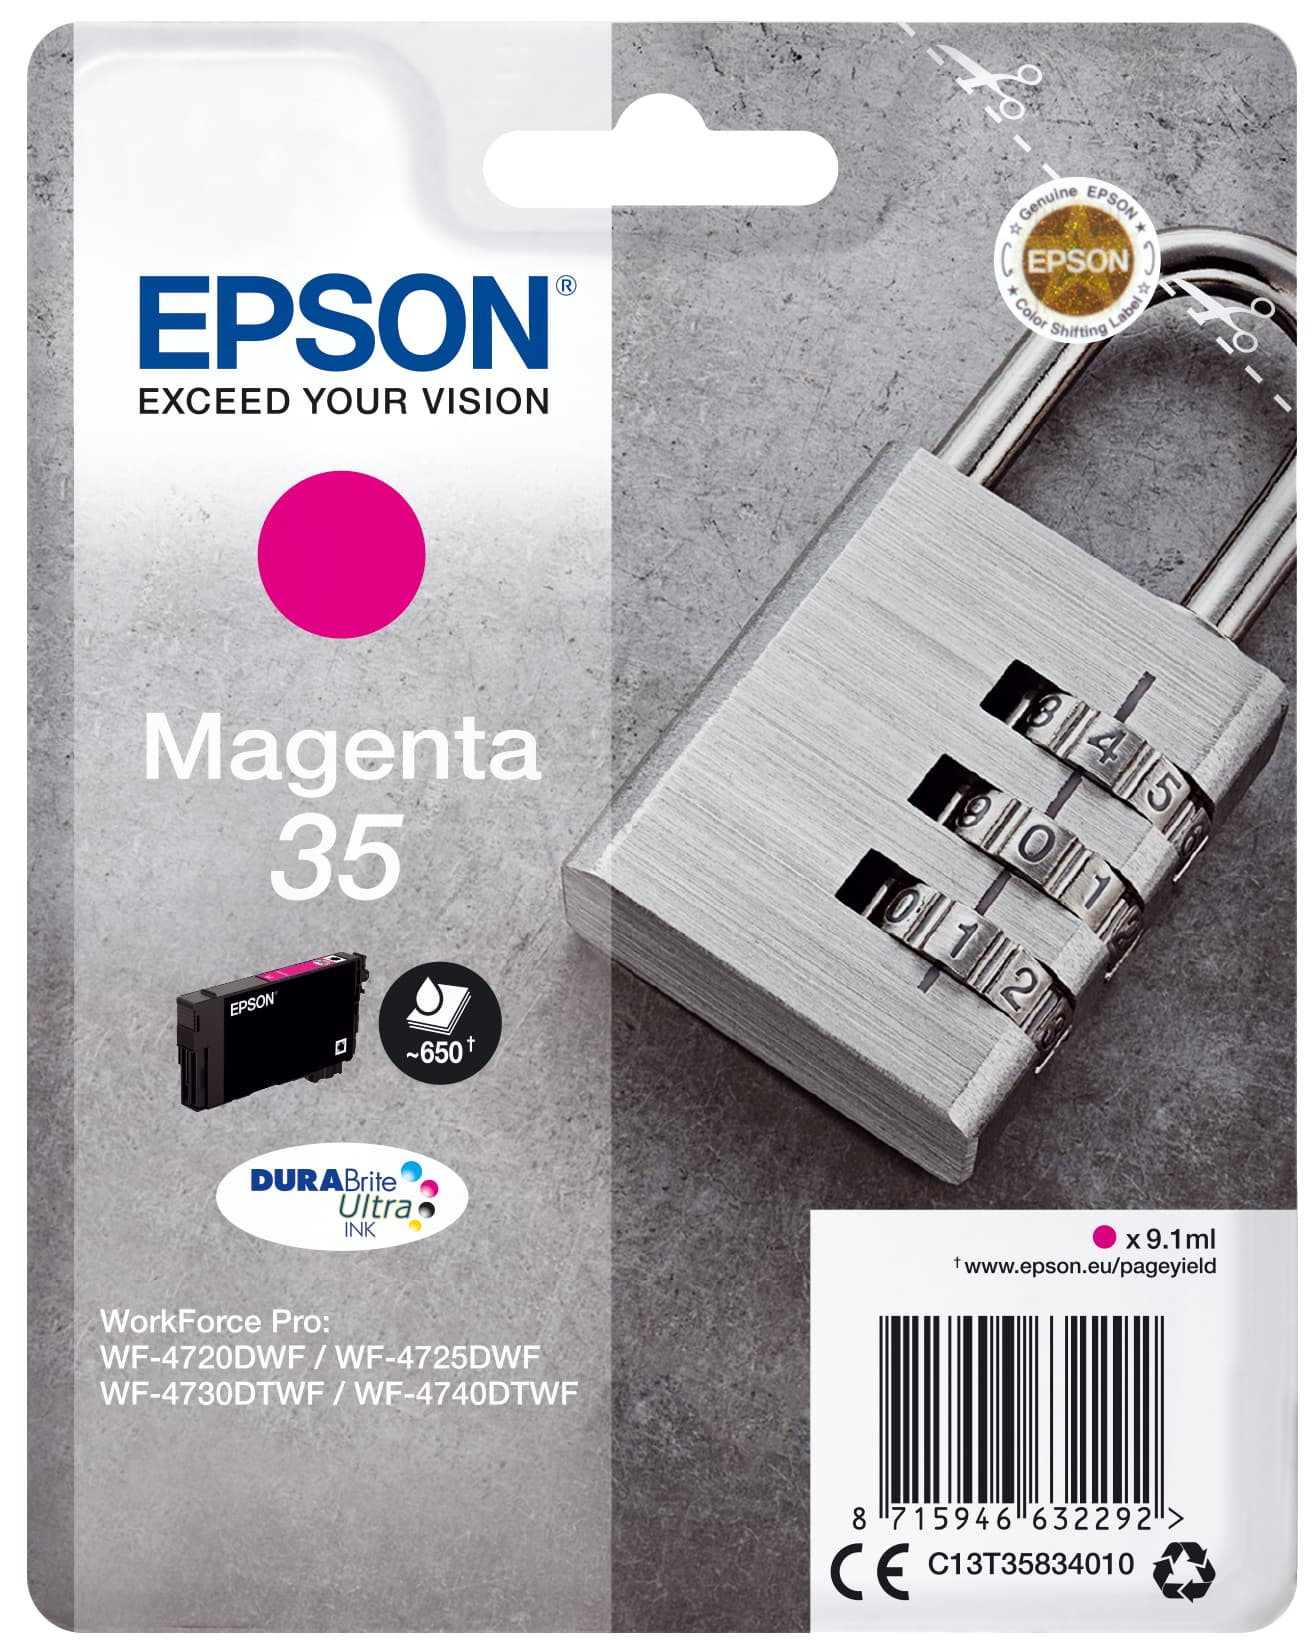 Epson Padlock Singlepack Magenta 35 DURABrite Ultra Ink - Standardertrag - Tinte auf Pigmentbasis - 9,1 ml - 650 Seiten - 1 Stück(e)